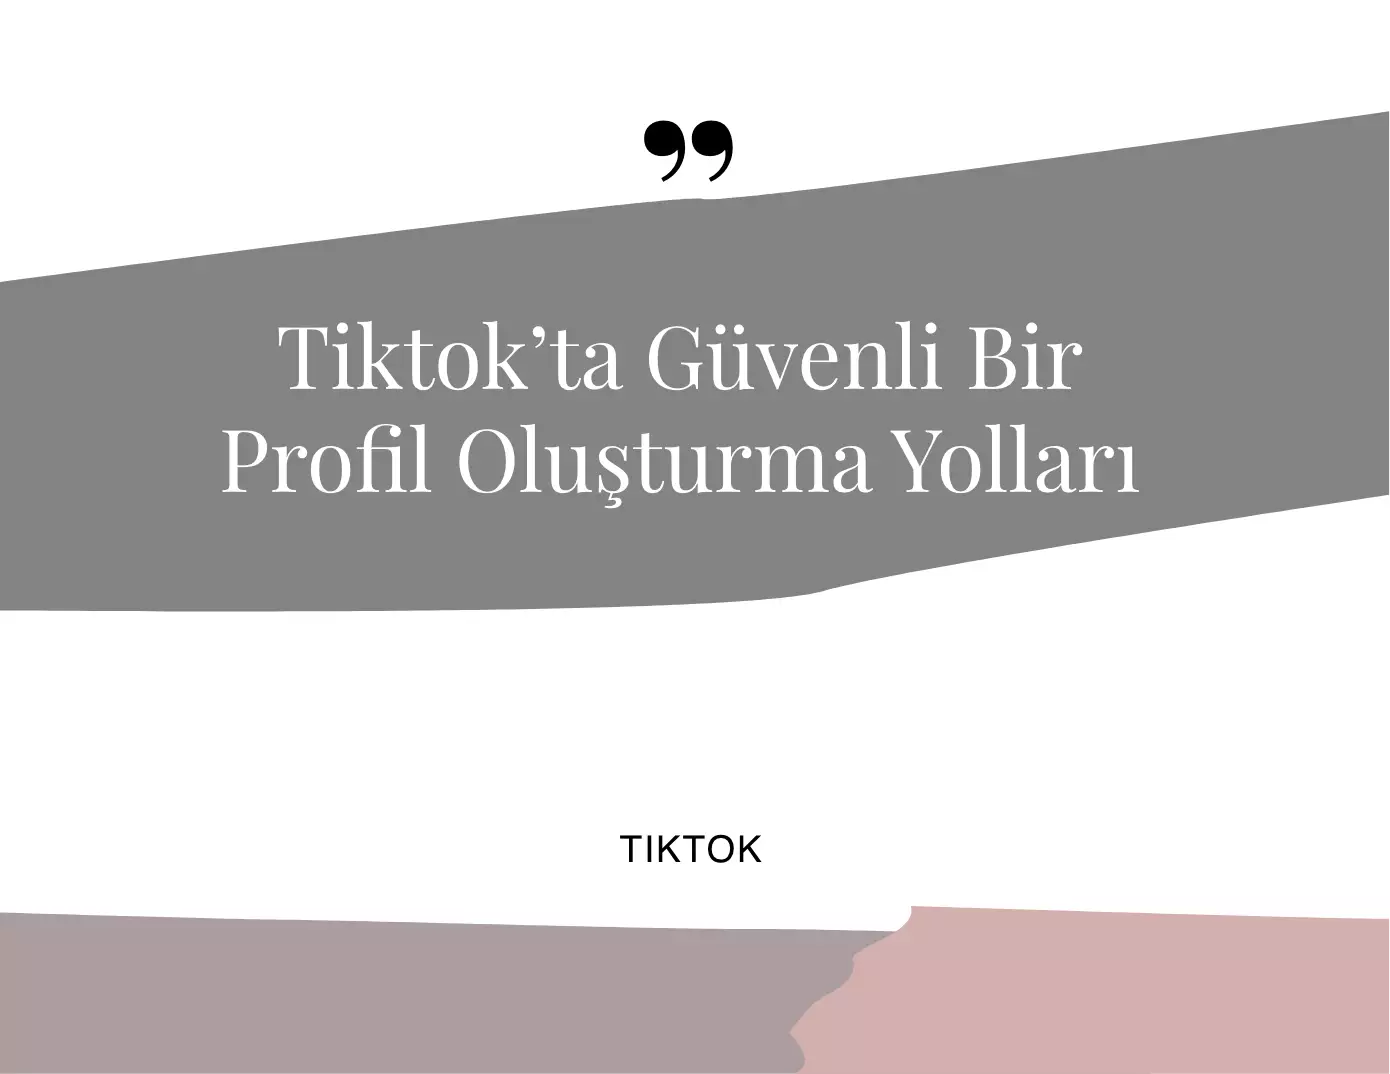 Tiktok'ta Güvenli Bir Profil Oluşturma Yolları